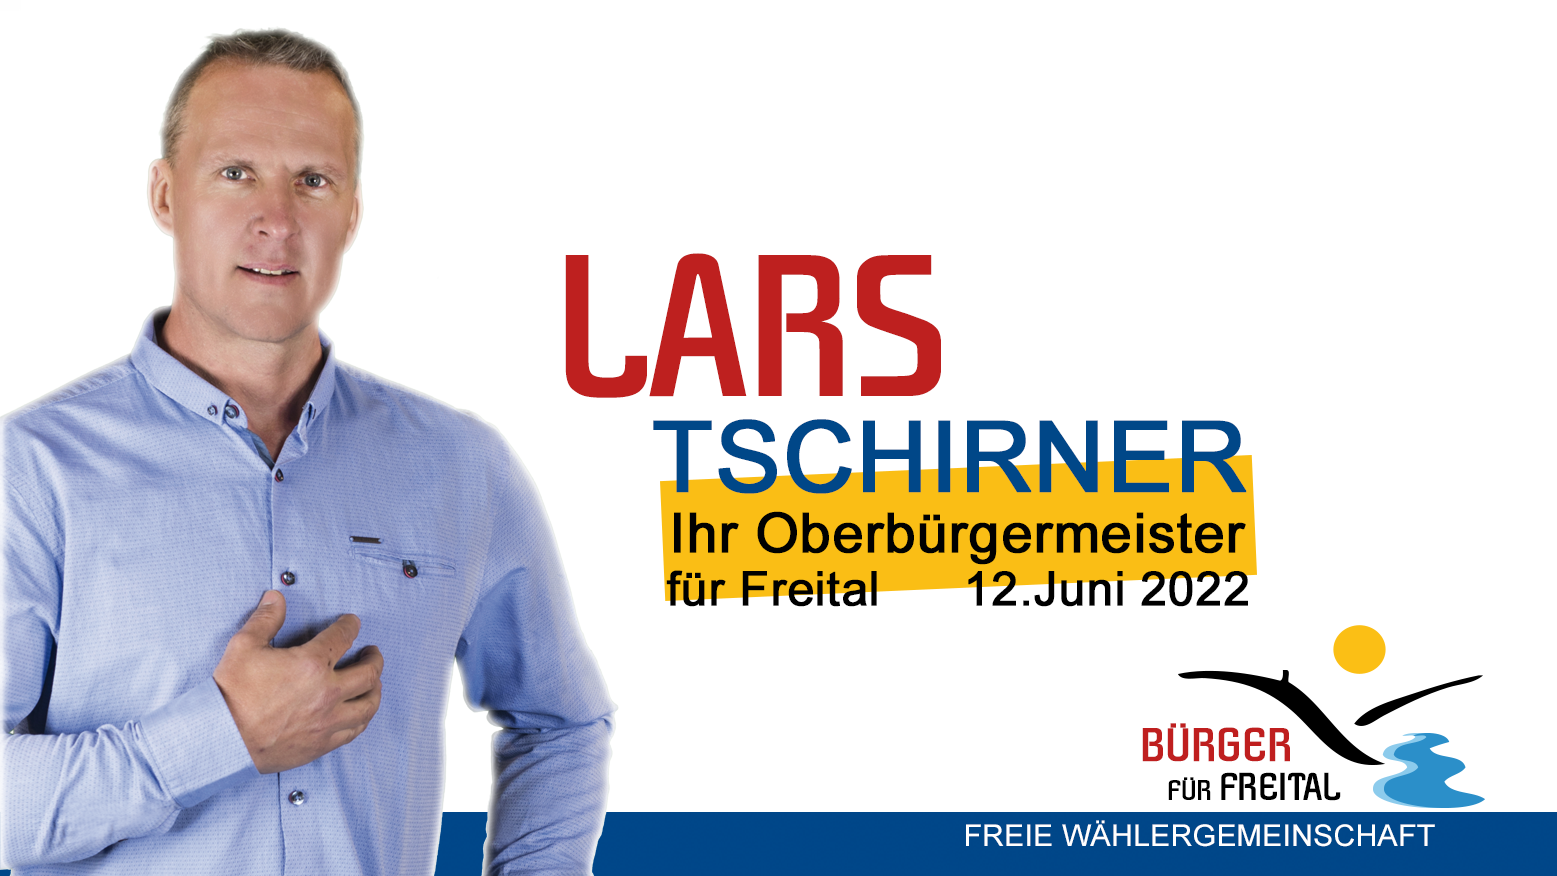 (c) Lars-tschirner.de